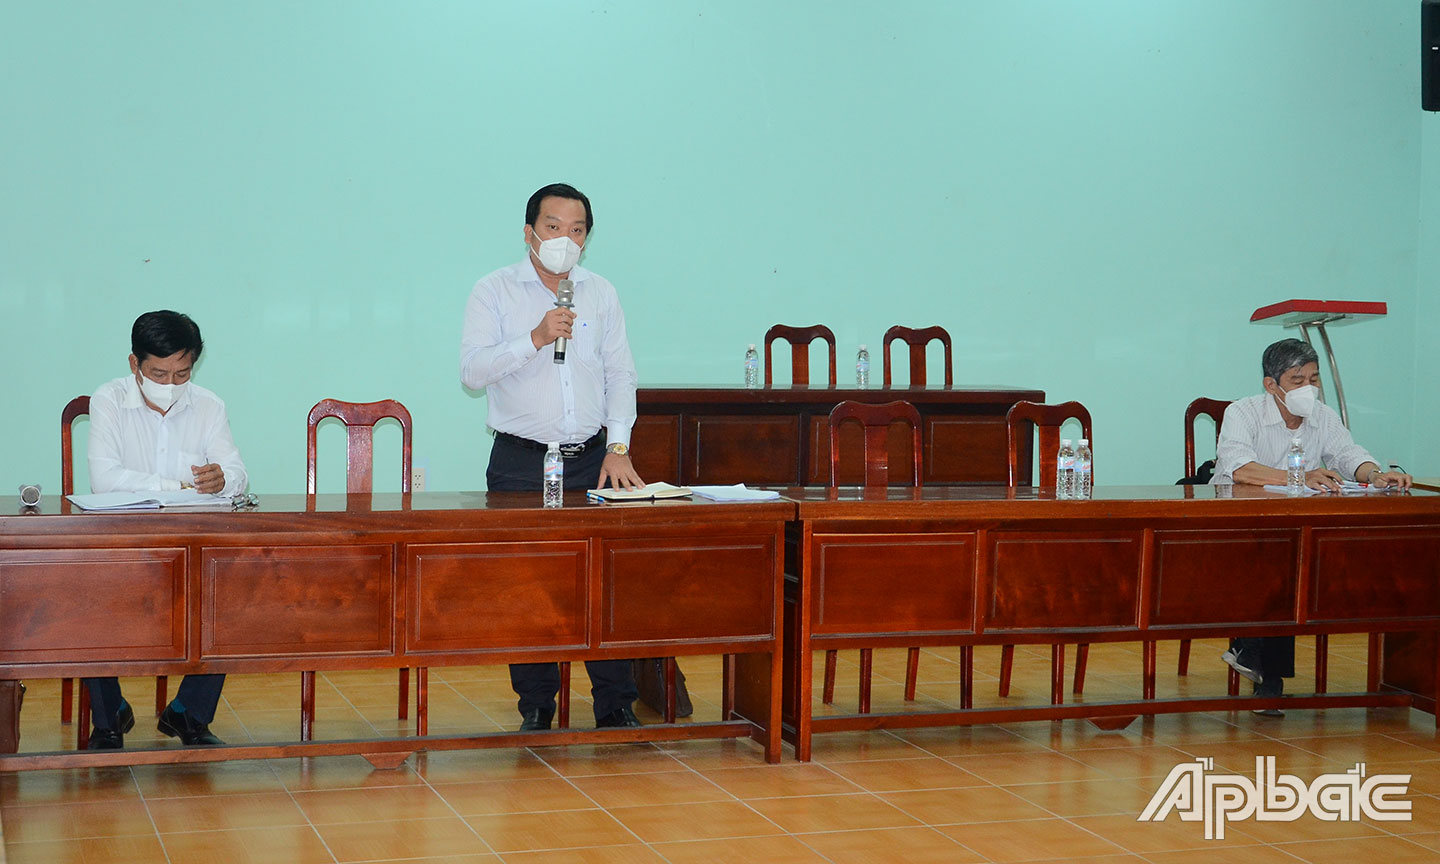 Đồng chí Nguyễn Nhật Trường phát biểu tại buổi gặp gỡ các DN tại KCN Tân Hương.